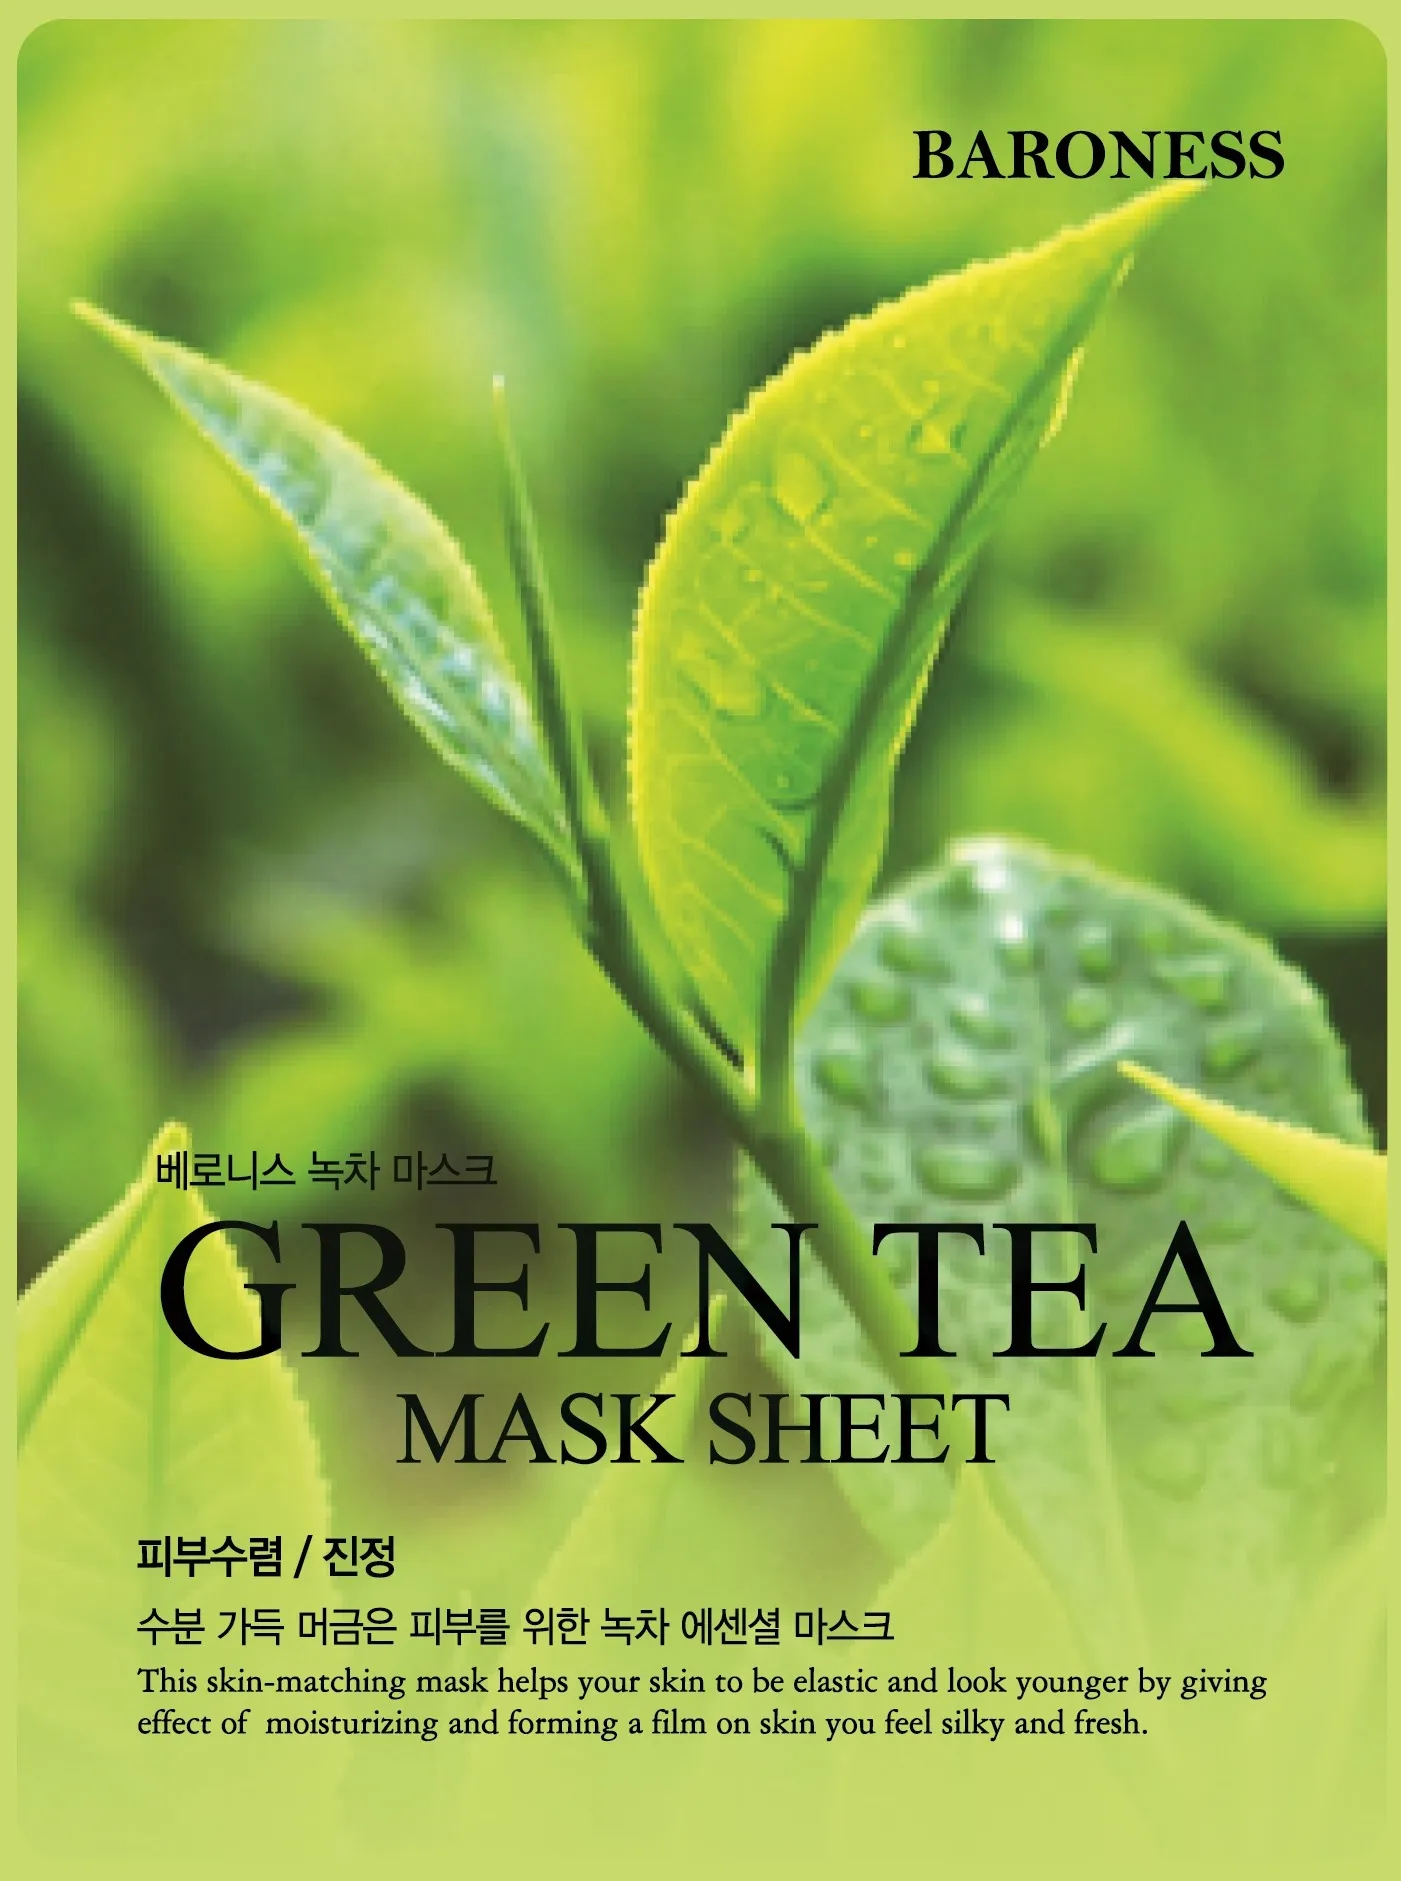 Baroness Maska oczyszczająca w płachcie z zieloną herbatą, 21 g